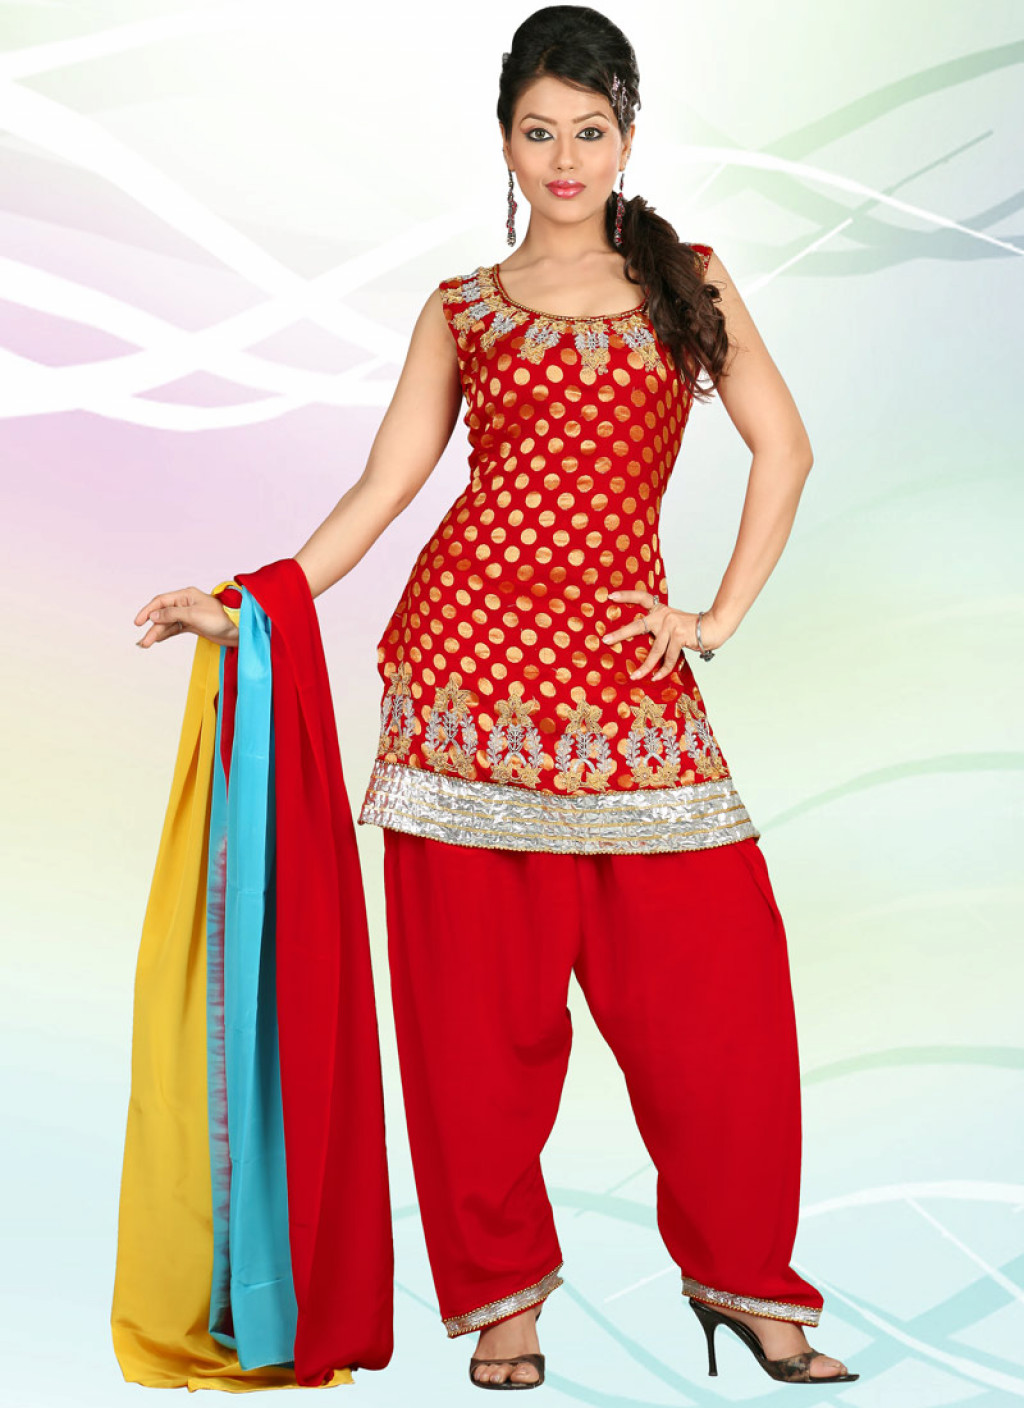 Plus Size Indian Clothing: Churidar, Salwar Kameez, Anarkali and Kurtis ...